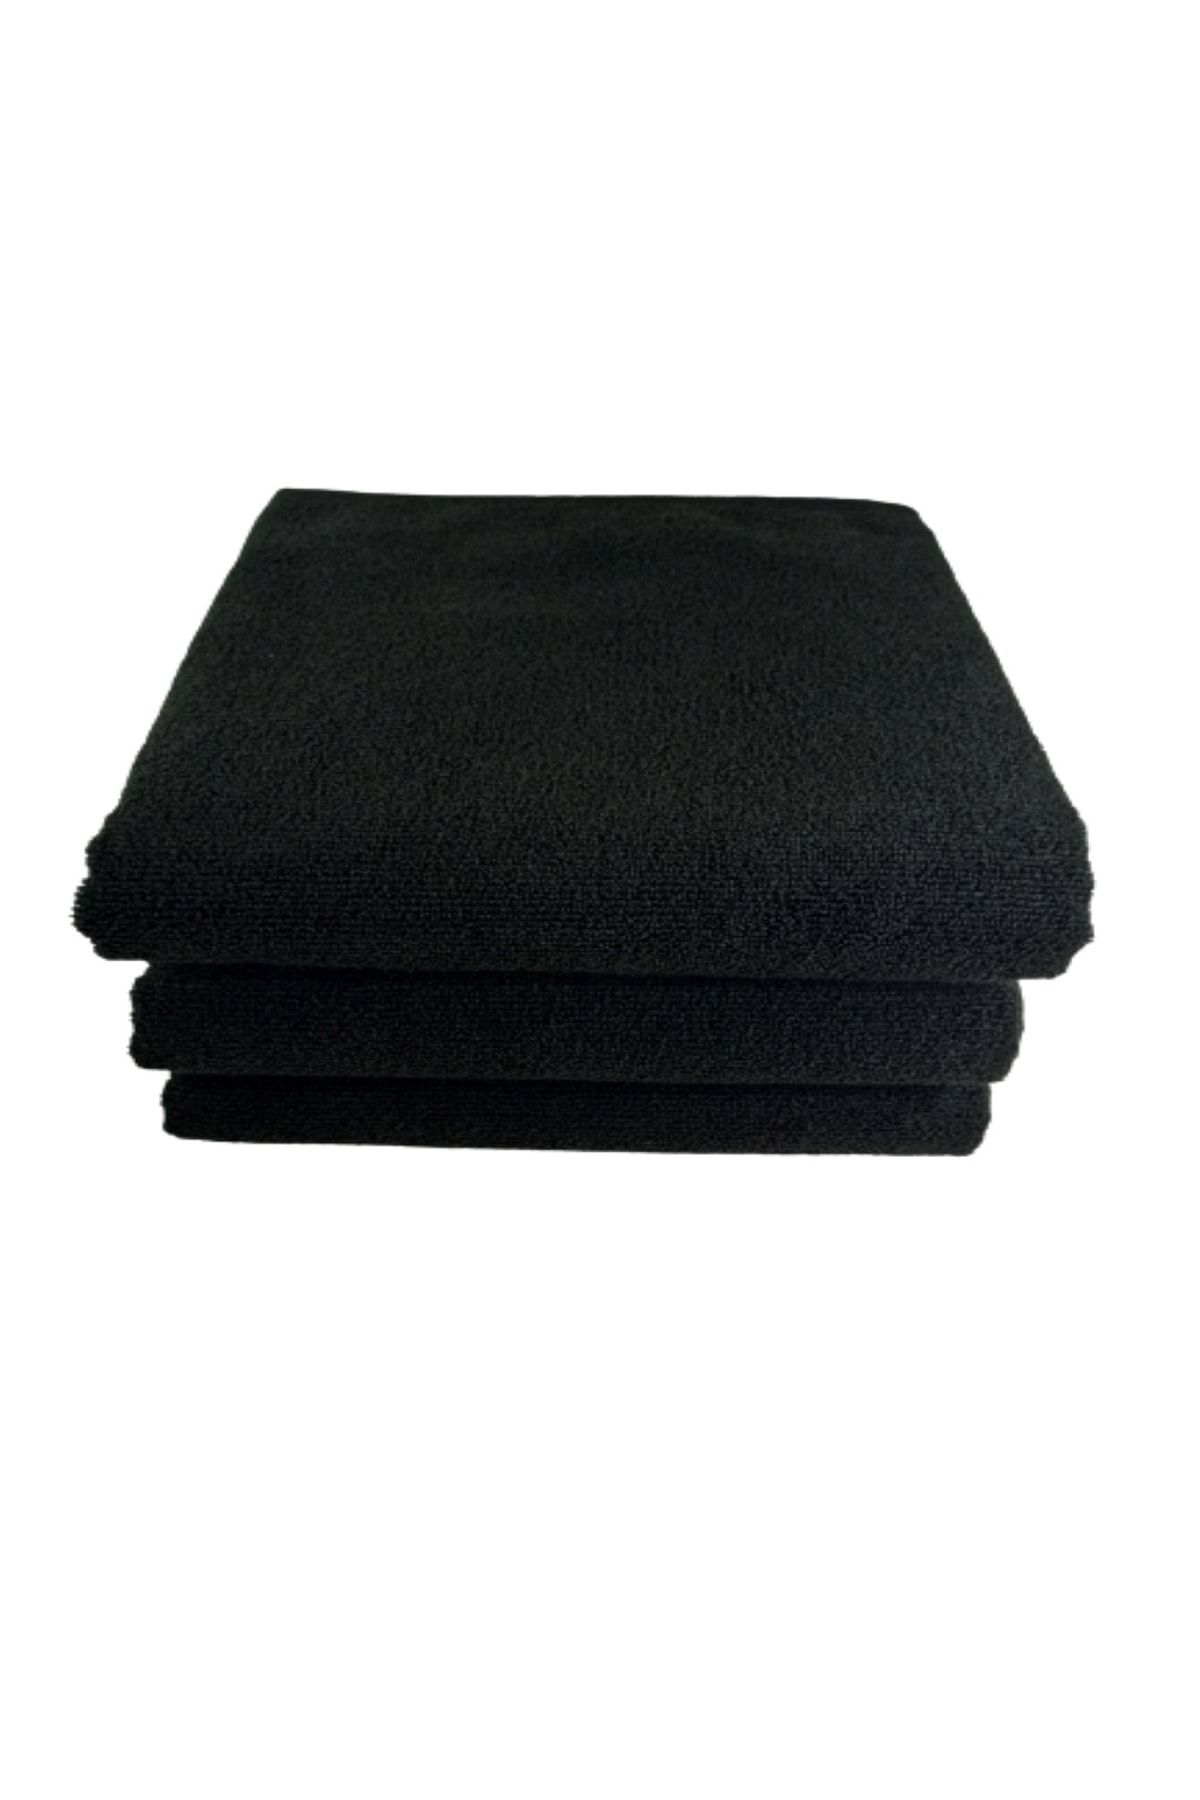 Bol Ticaret Tekstil 12 Adet Outlet Siyah Mikrofiber Kuaför Havlusu Saç Boyası Tutmayan 50x90 Cm